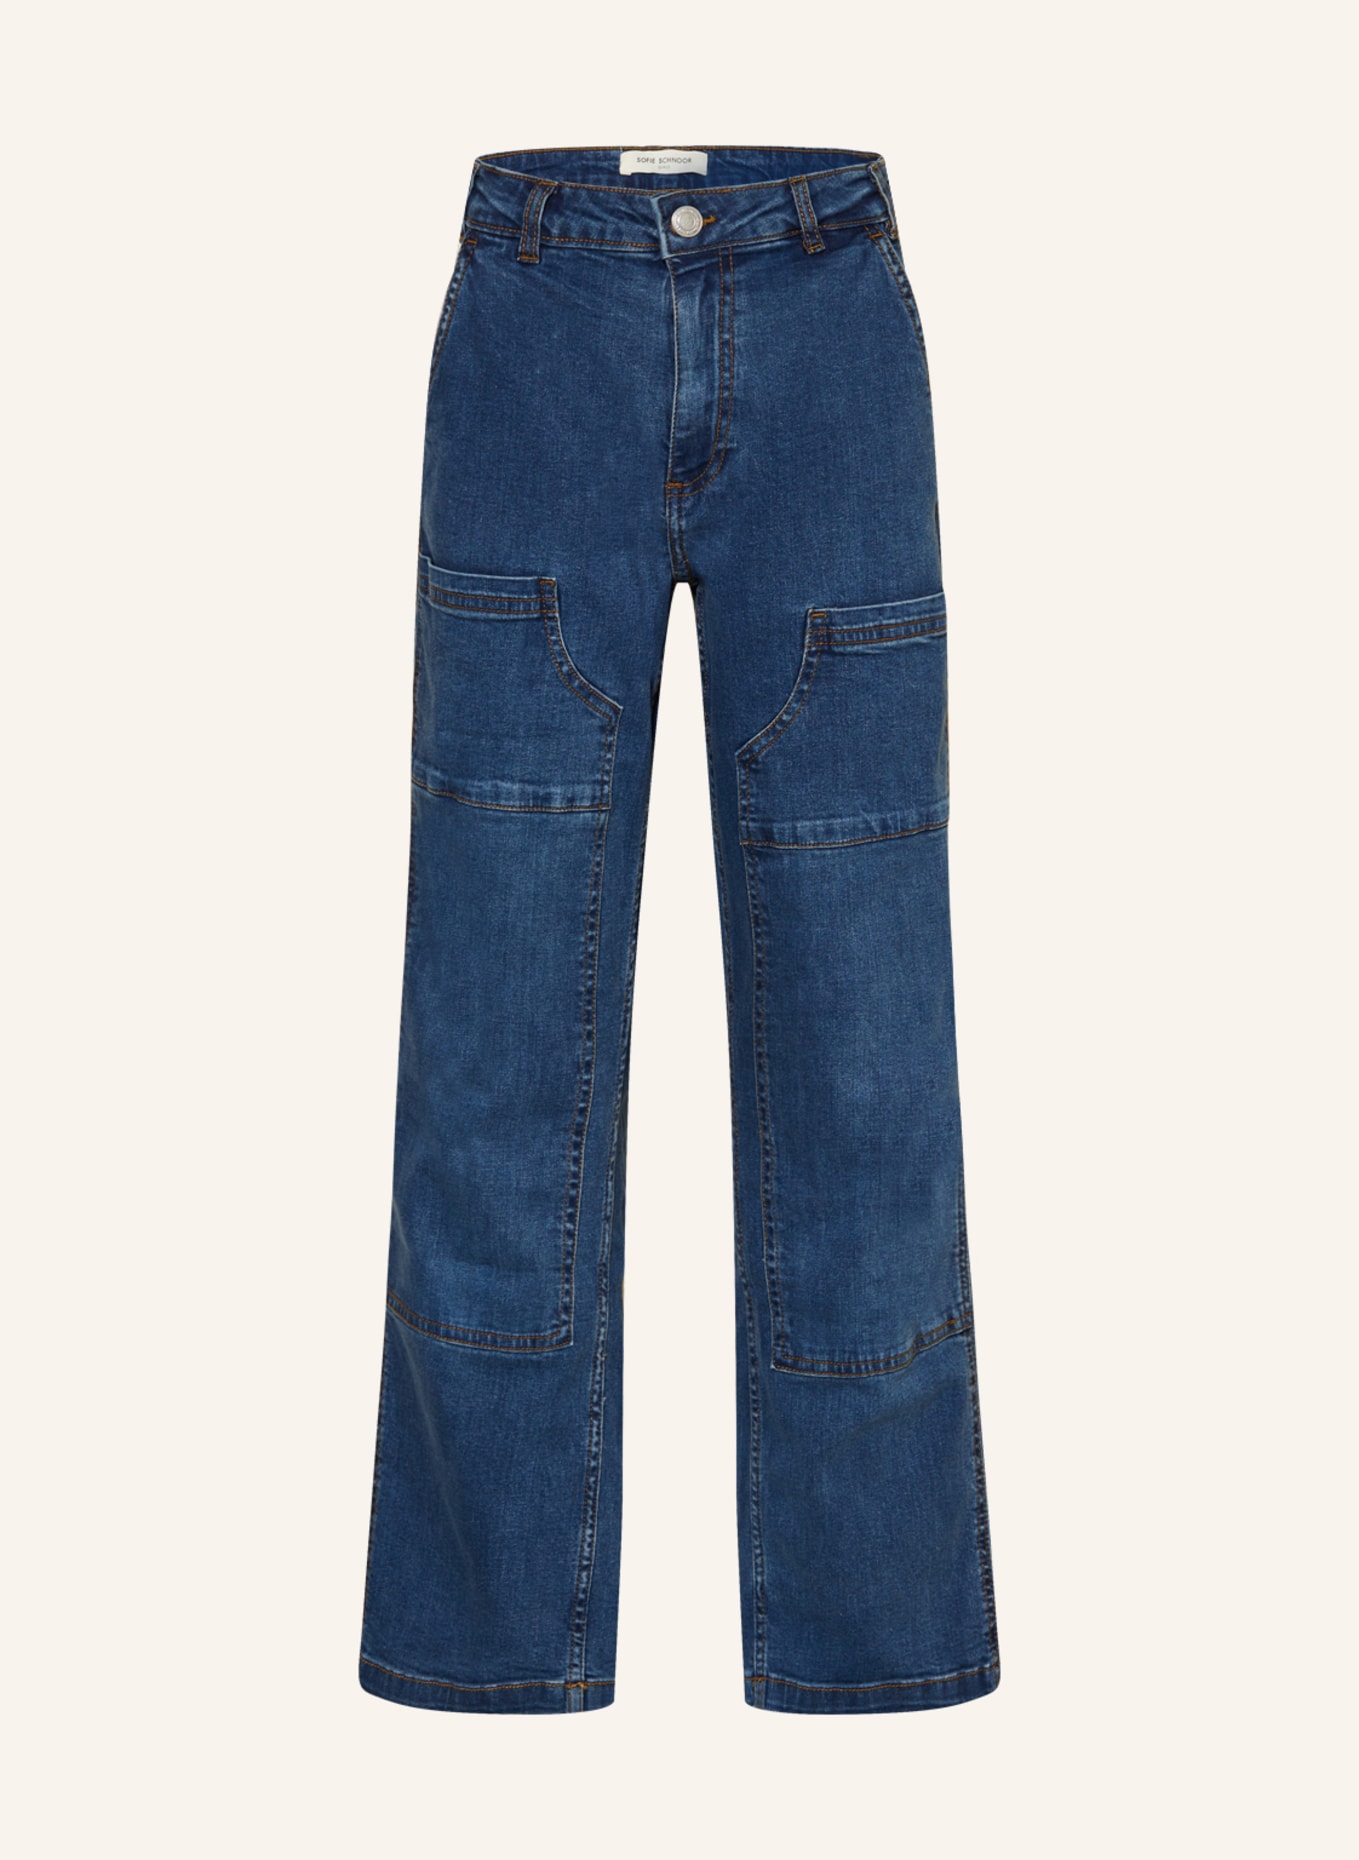 SOFIE SCHNOOR Jeans, Farbe: BLAU (Bild 1)